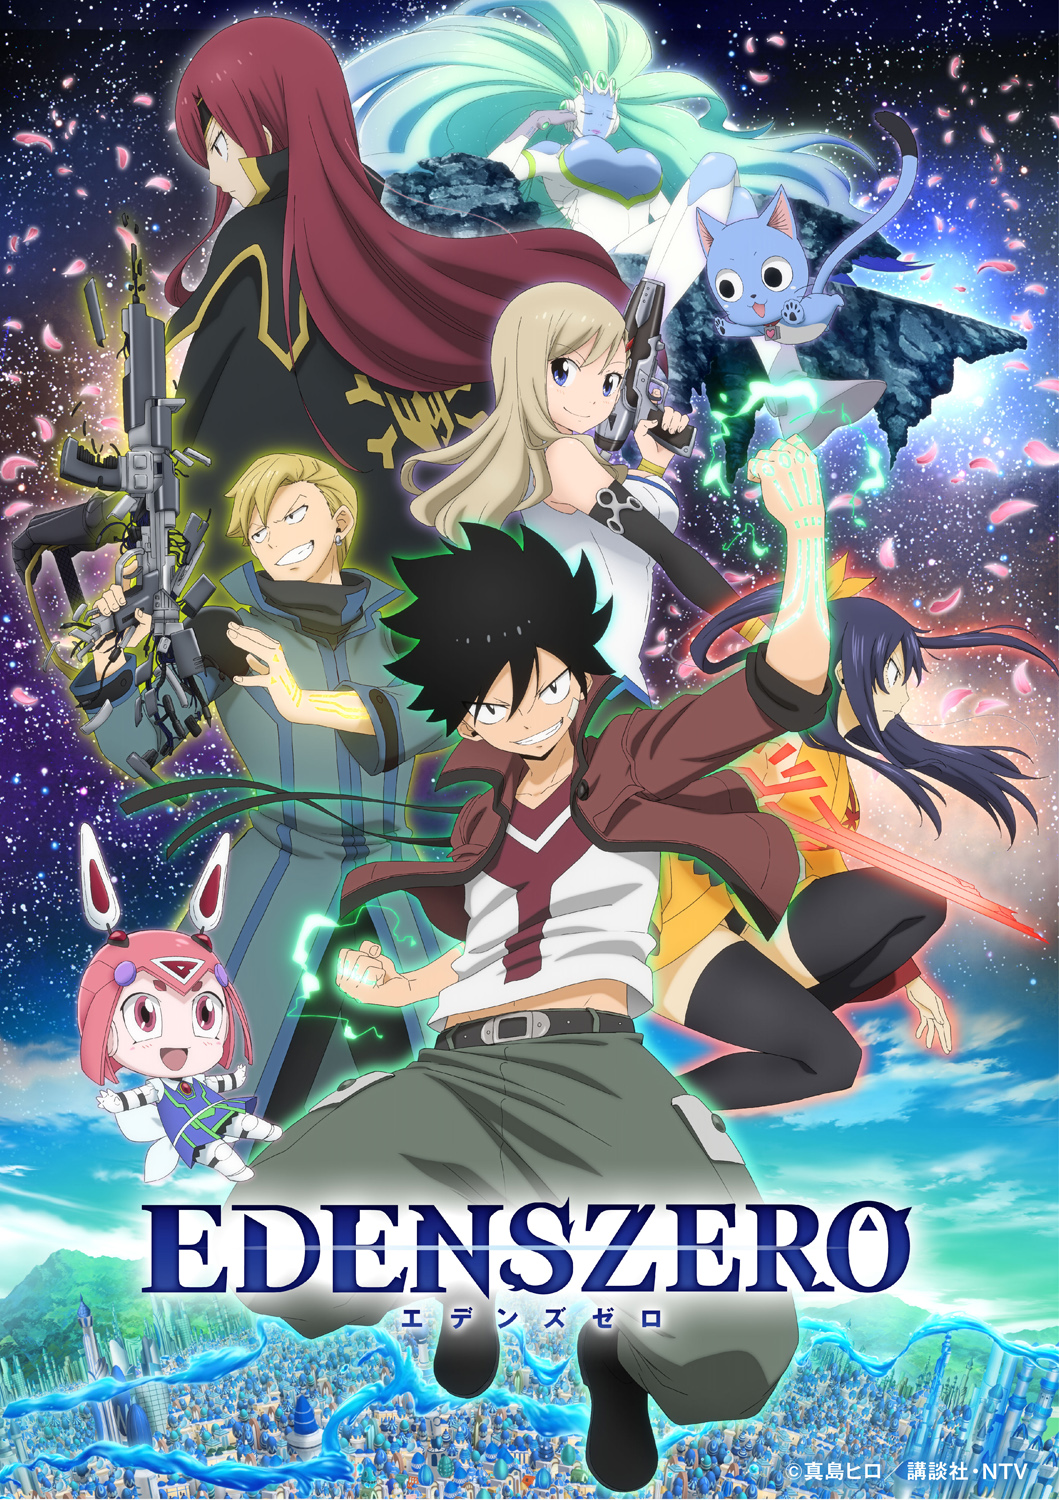 Edens Zero: jogo do anime é lançado no Android e iOS - Mobile Gamer